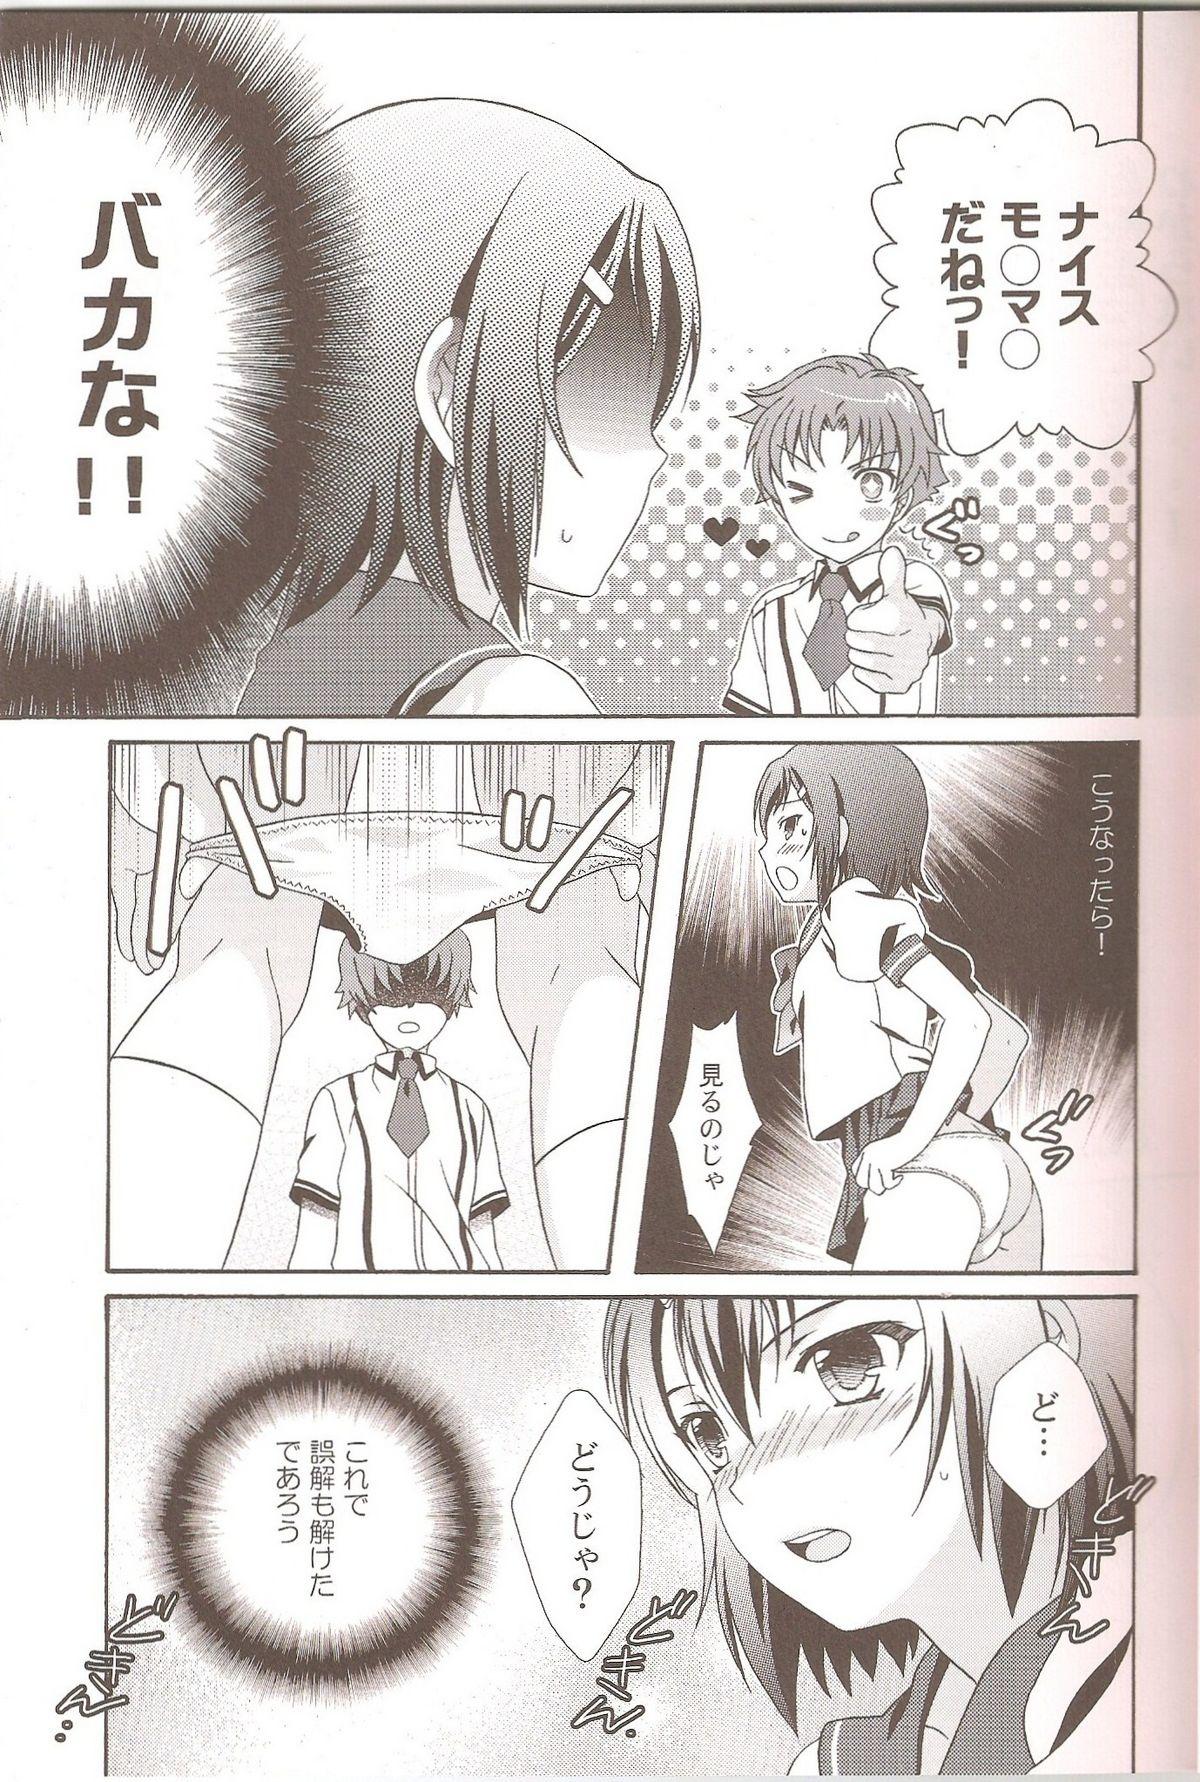 Pmv Otoko no Ko no Hon - Baka to test to shoukanjuu Minami ke Shugo chara Girlnextdoor - Page 4